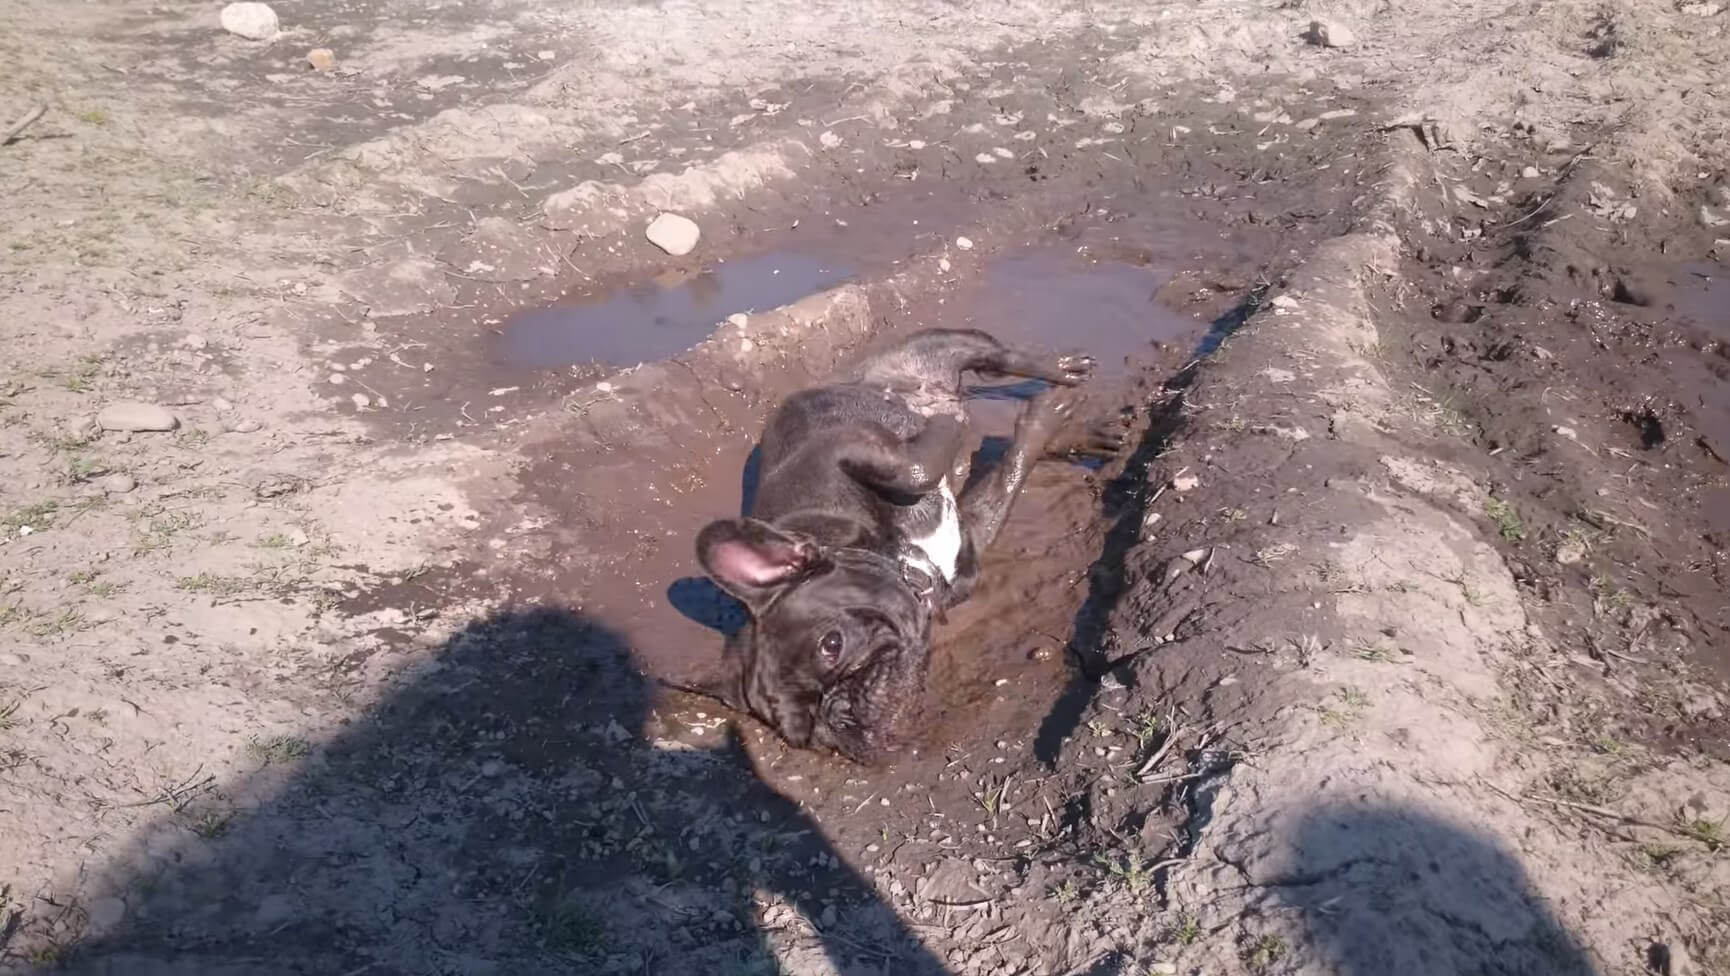 やだ 帰んない 泥風呂をお気に召したフレブル そこに泥がある限り みんな浸かりたくなるらしい 泥動画3本 フレンチブルドッグライフ